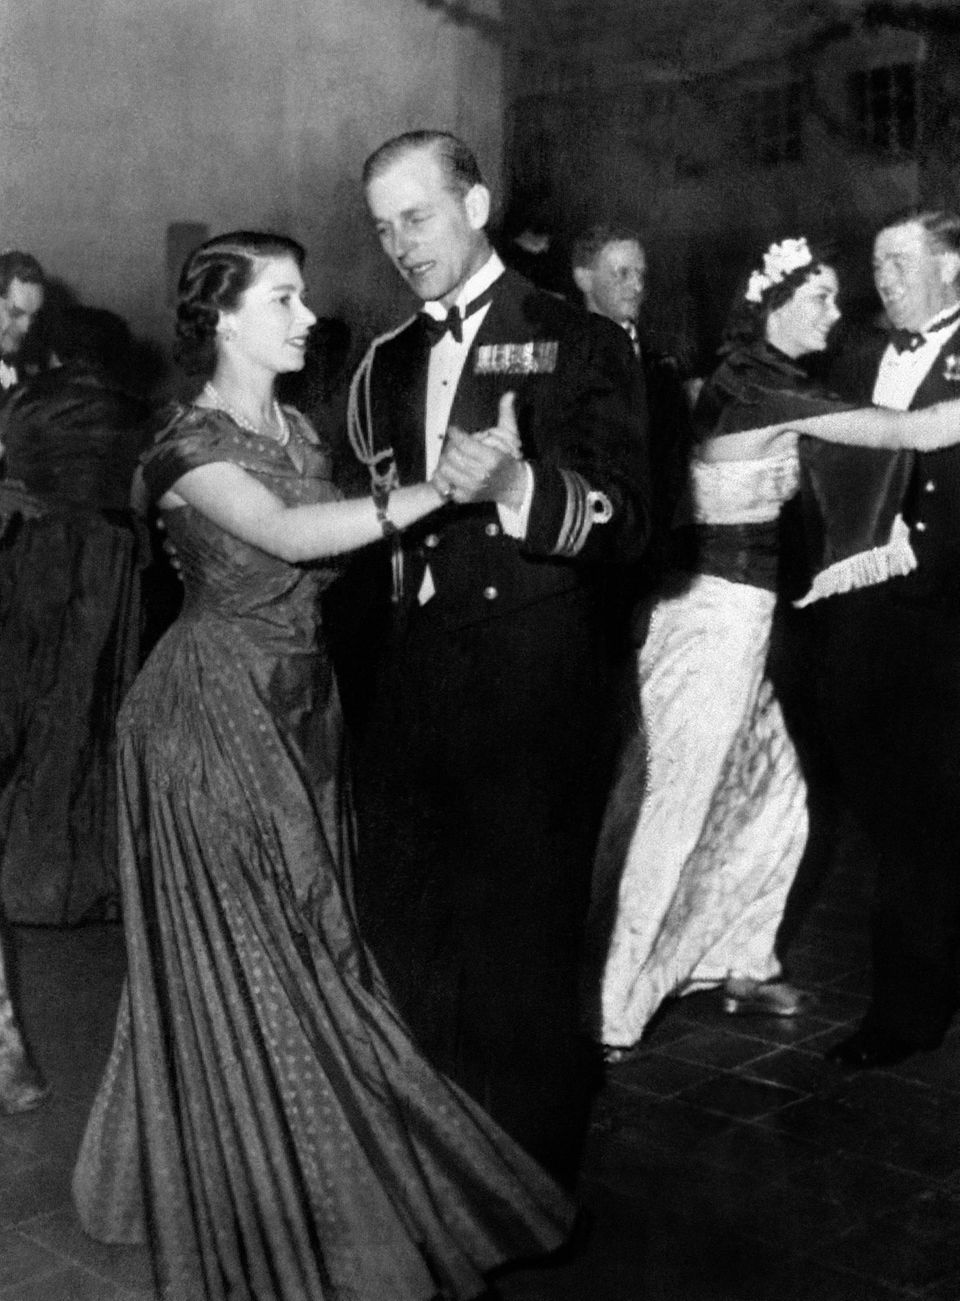 Queen Elizabeth II.: beim Tanzen